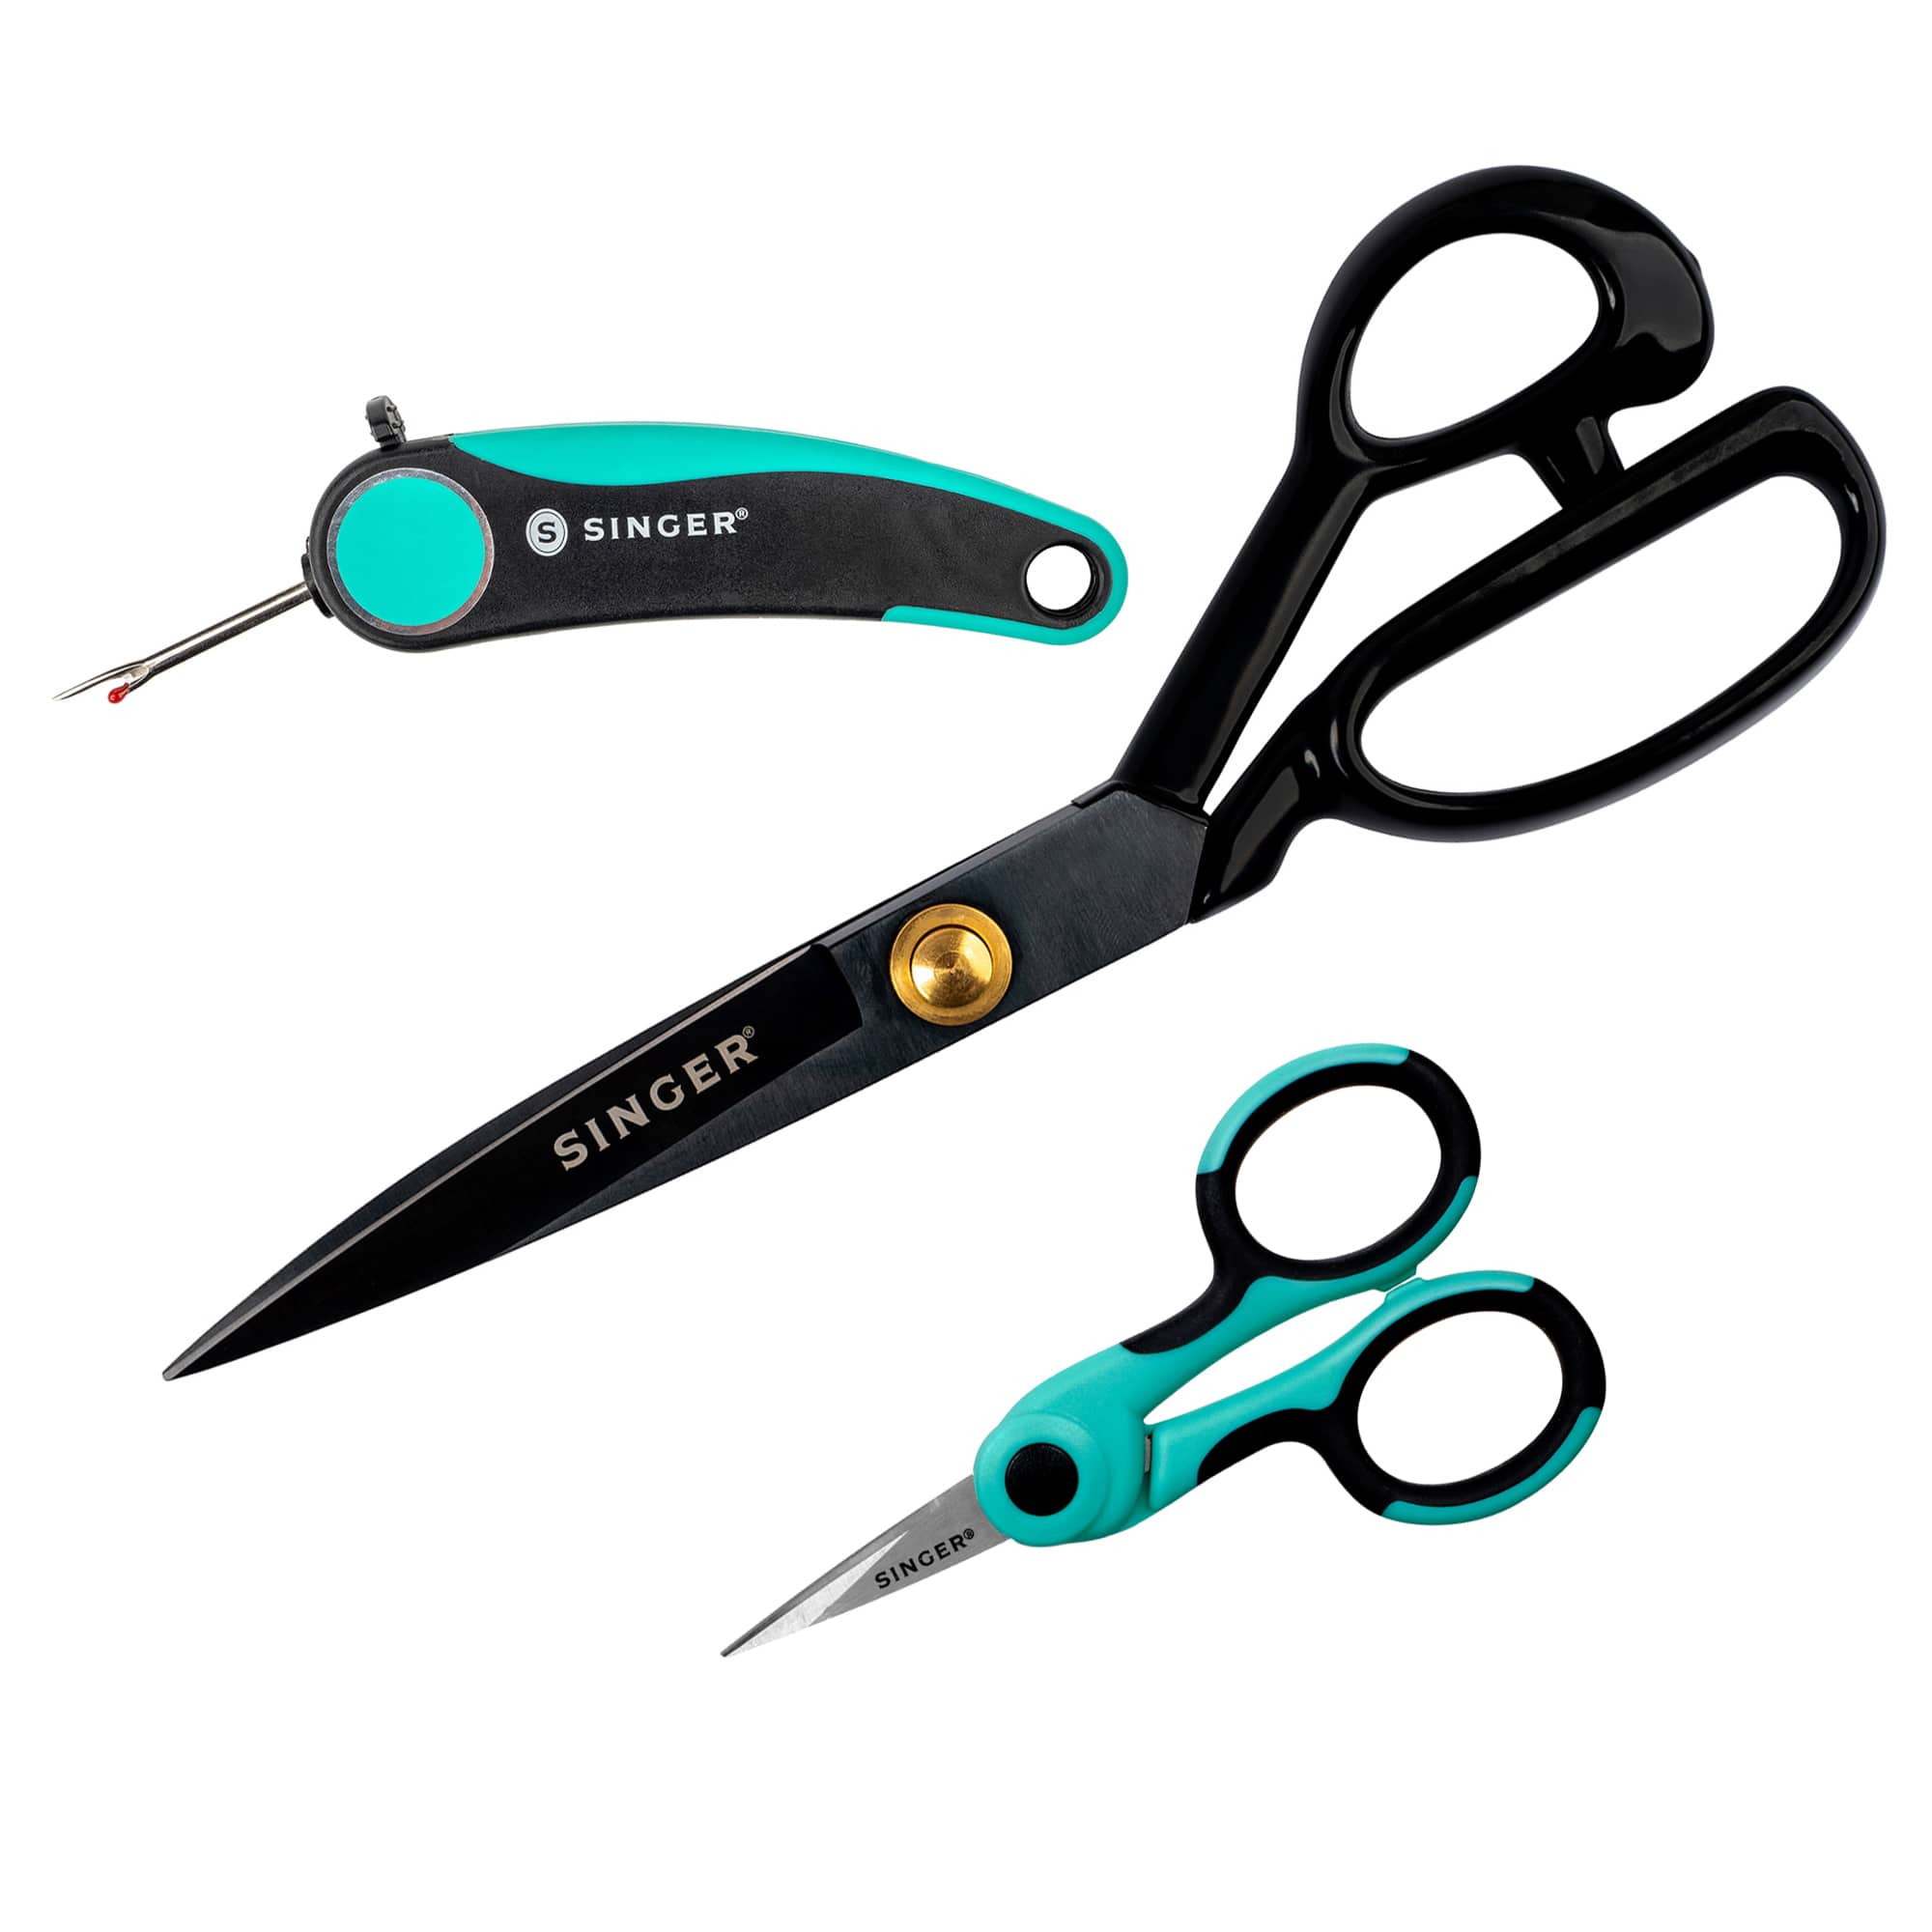 SINGER® ProSeries Sewing Essentials Scissors Set